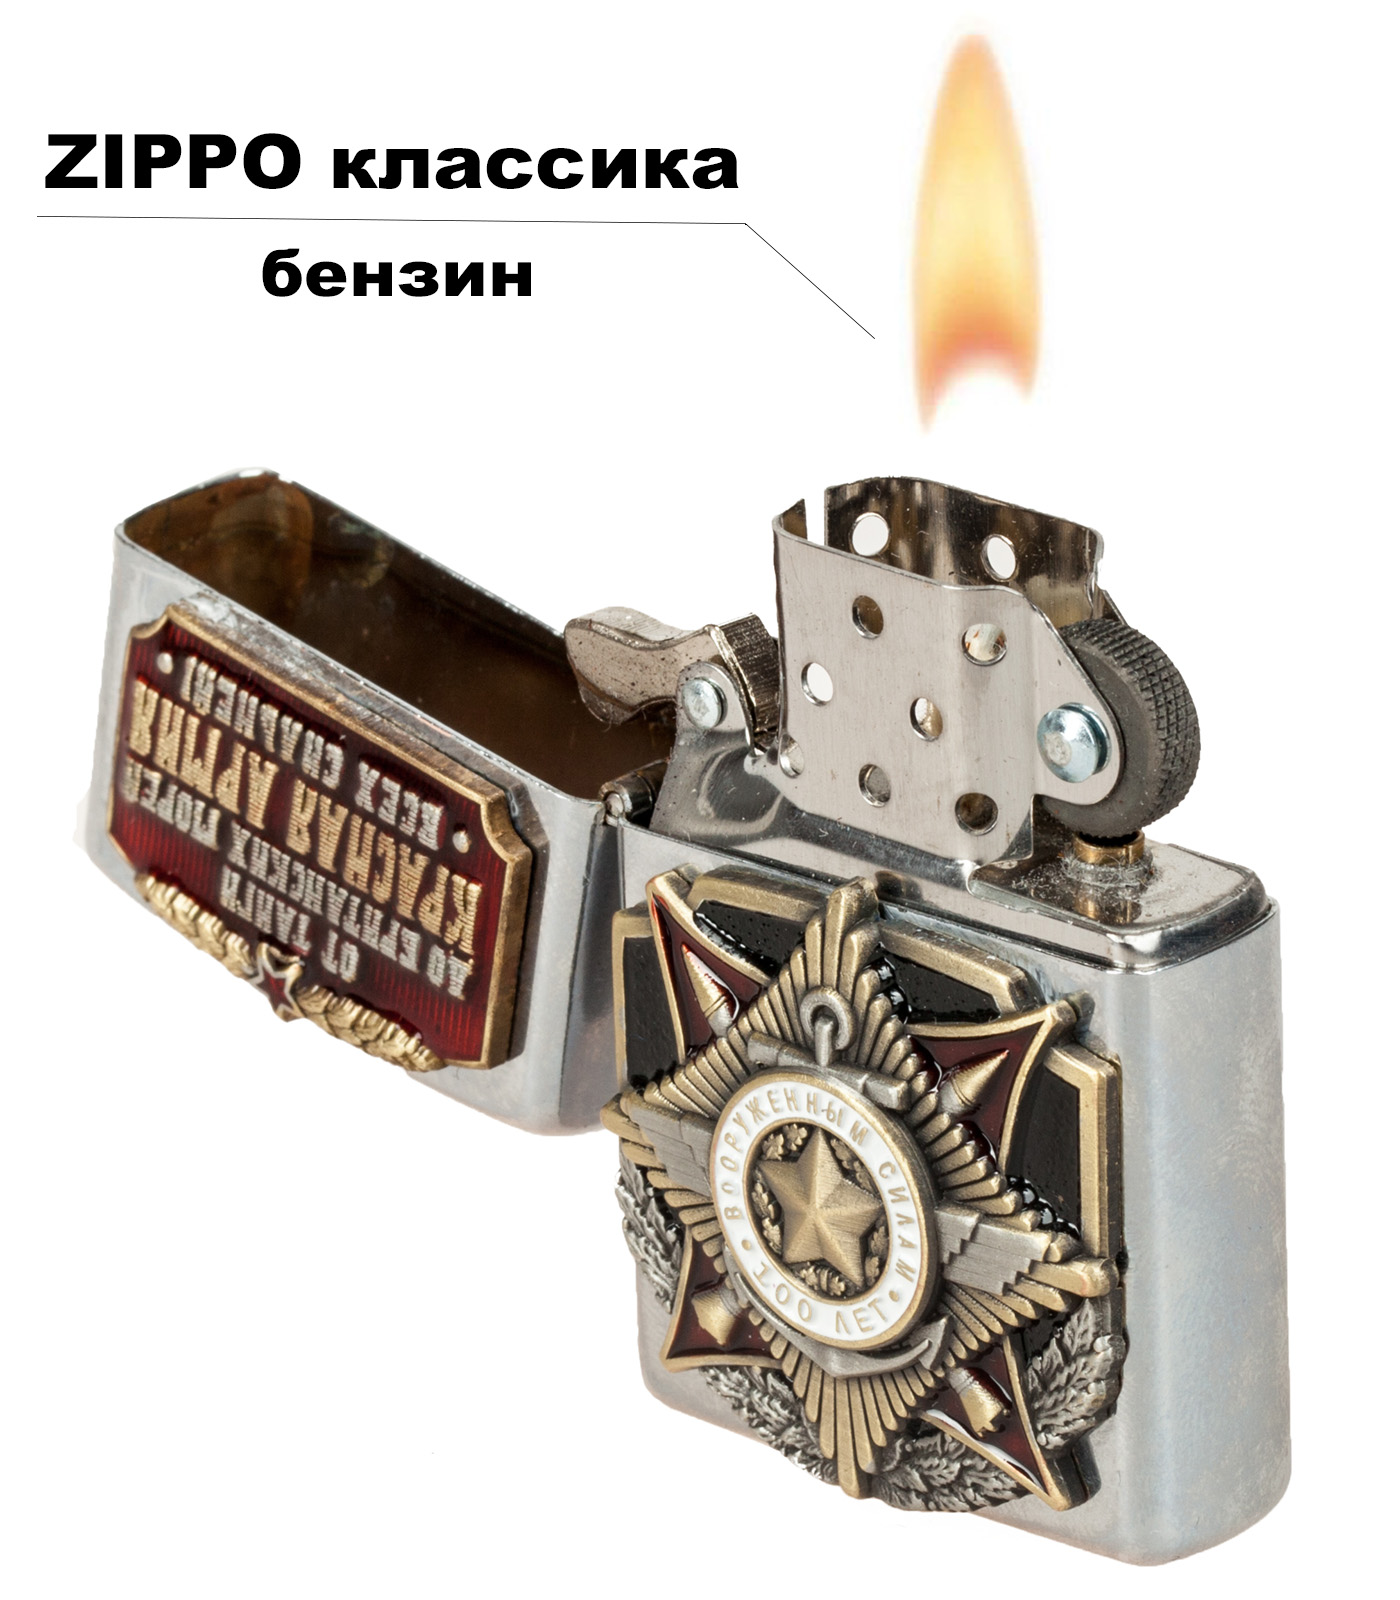 Подарочная зажигалка "100 лет Вооруженным силам" от Военпро